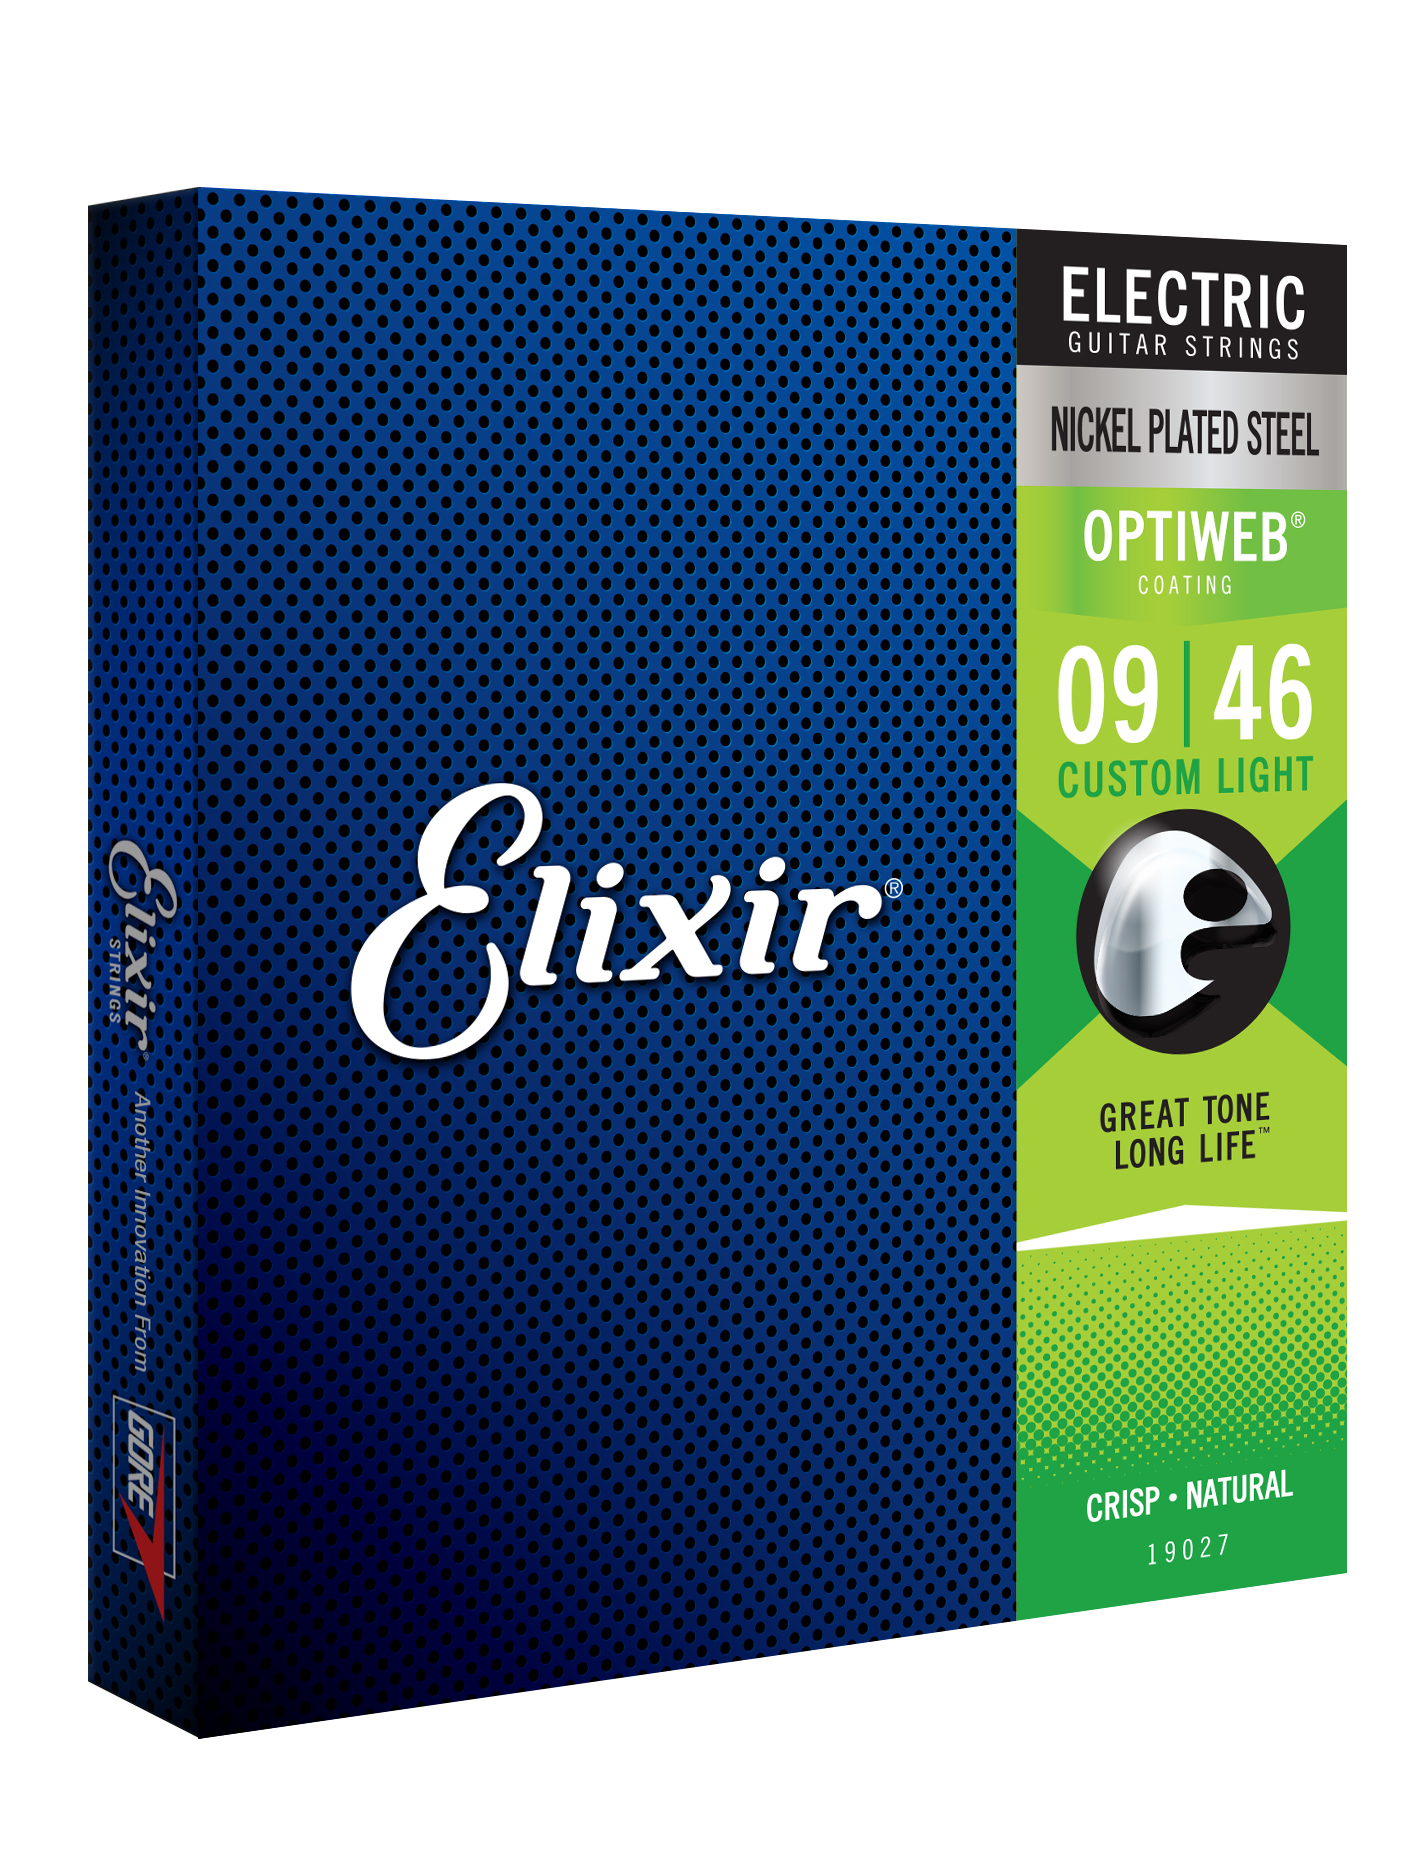 Elixir 19027 Optiweb Nps Round Wound Electric Guitar 6c 9-46 - Elektrische gitaarsnaren - Variation 1